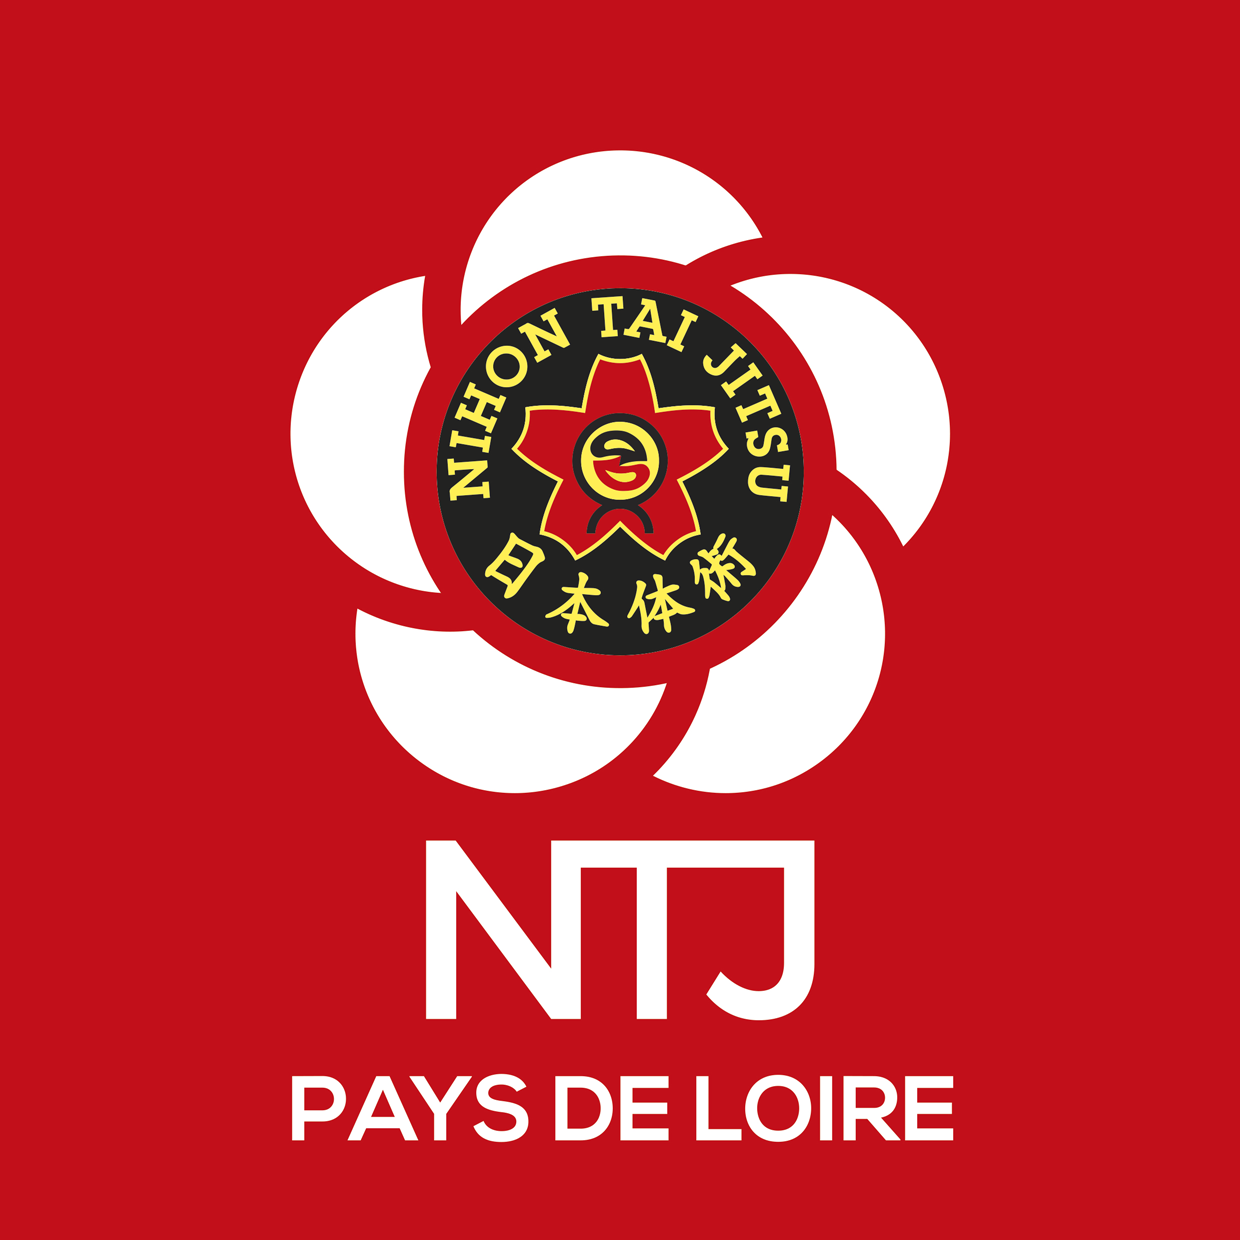 NTJ region PAYS DE LOIRE logo rvb